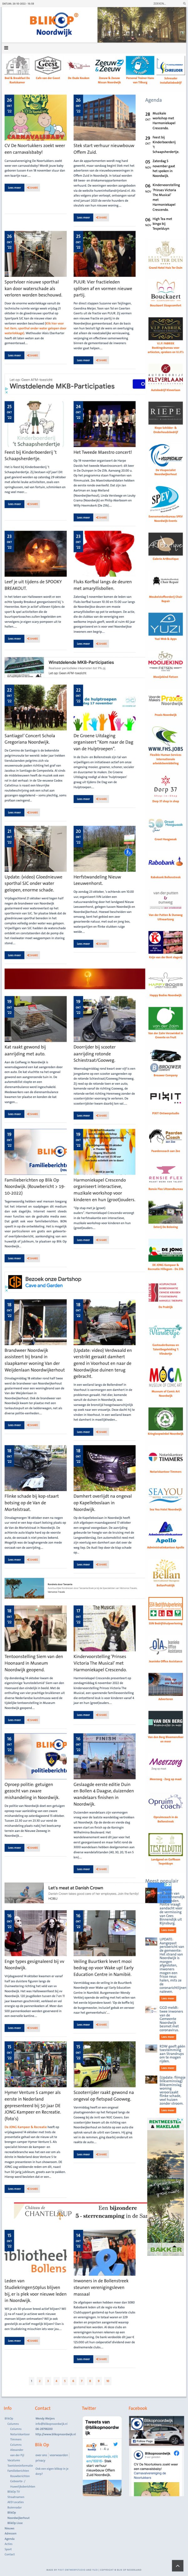 Website BlikOp Noordwijk